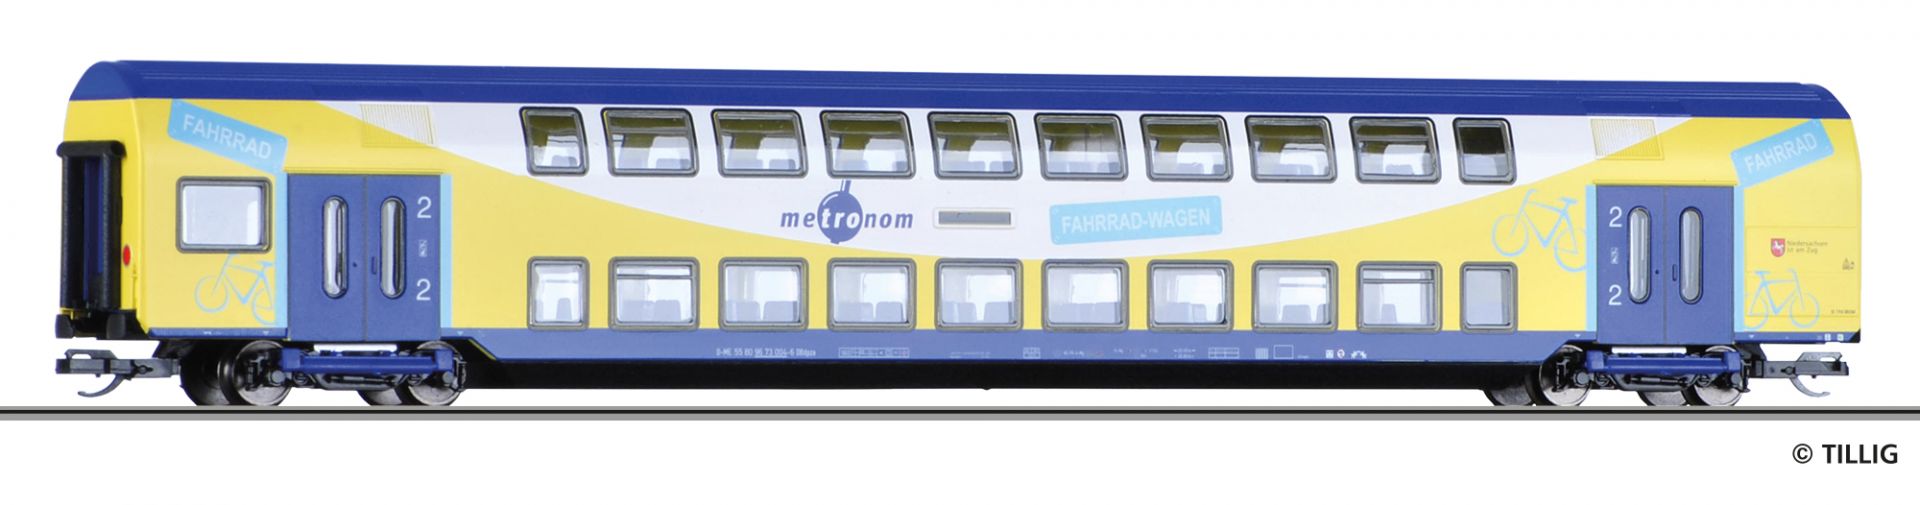 16801 | Double-deck coach metronom Eisenbahngesellschaft mbH